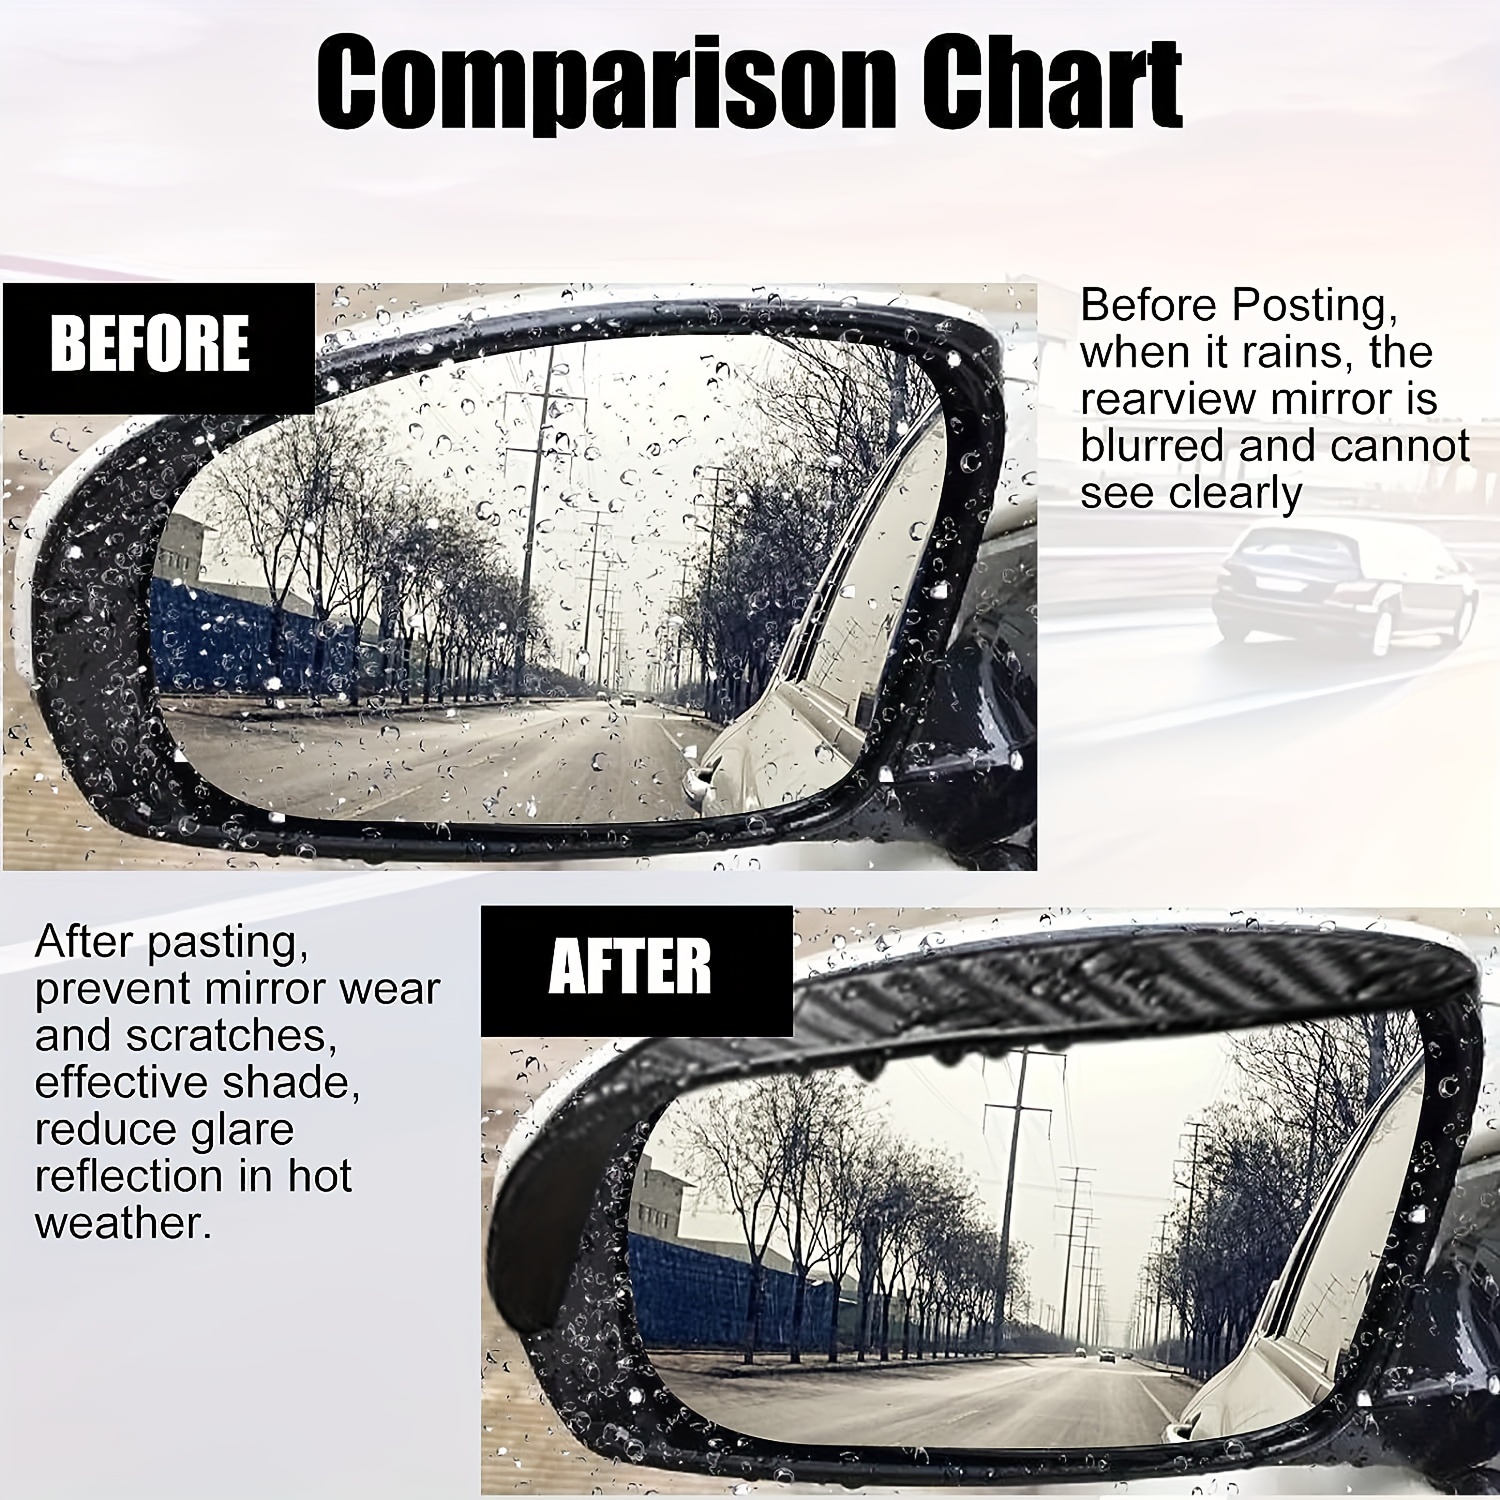 2 Stück Auto-Rückspiegel-Regenvisierschutz,  Auto-Seitenspiegel-Regen-Augenbrauenschutz, Auto-Spiegel-Regenvisier,  Auto-Außenverkleidungszubehör